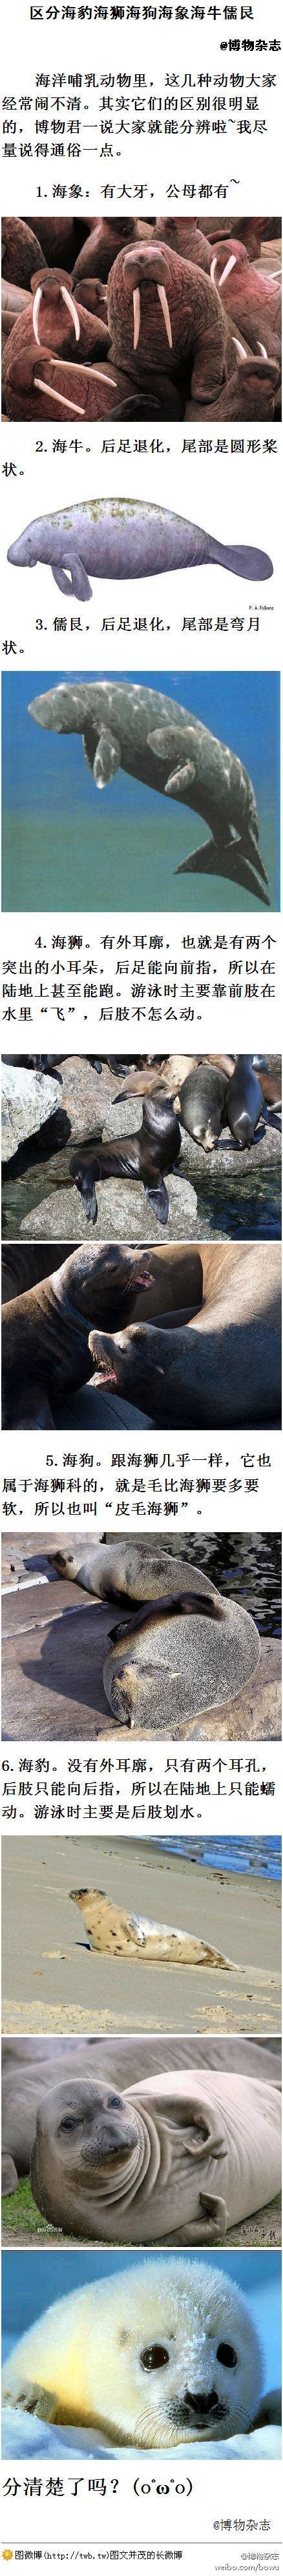 区分海豹海狮海狗海象海牛儒艮海洋哺乳动物里这几种动物大家经常闹不